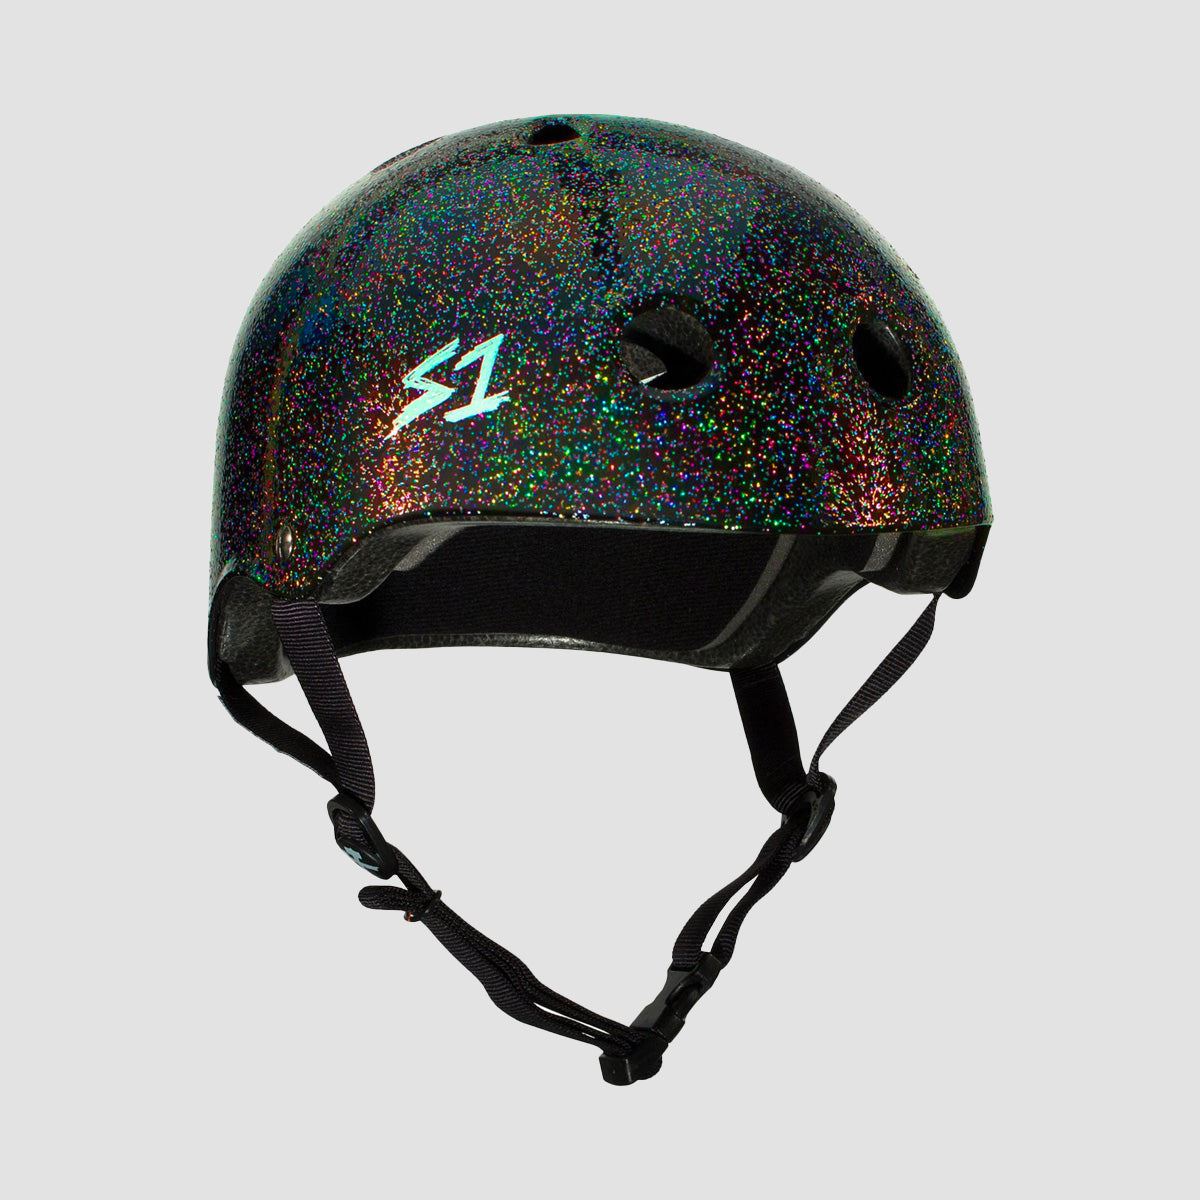 S1 Lifer Helmet Black Gloss Glitter